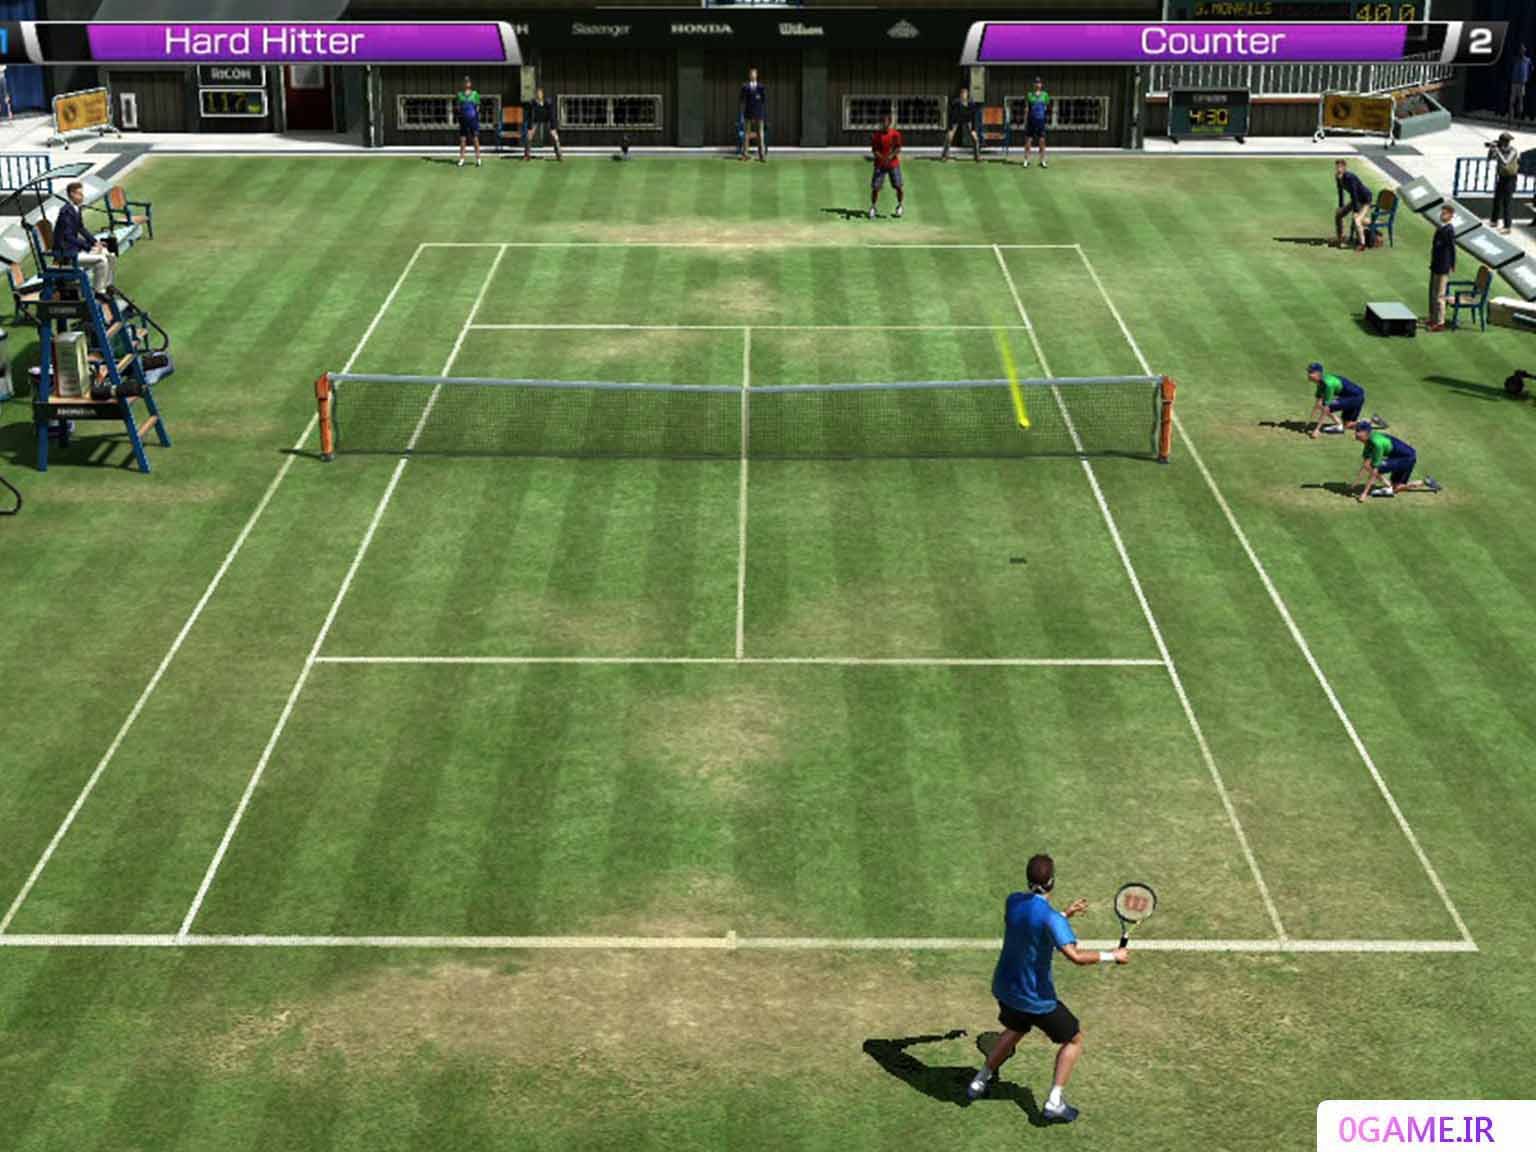 دانلود بازی تنیس مجازی 4 (Virtua Tennis) نسخه کامل برای کامپیوتر